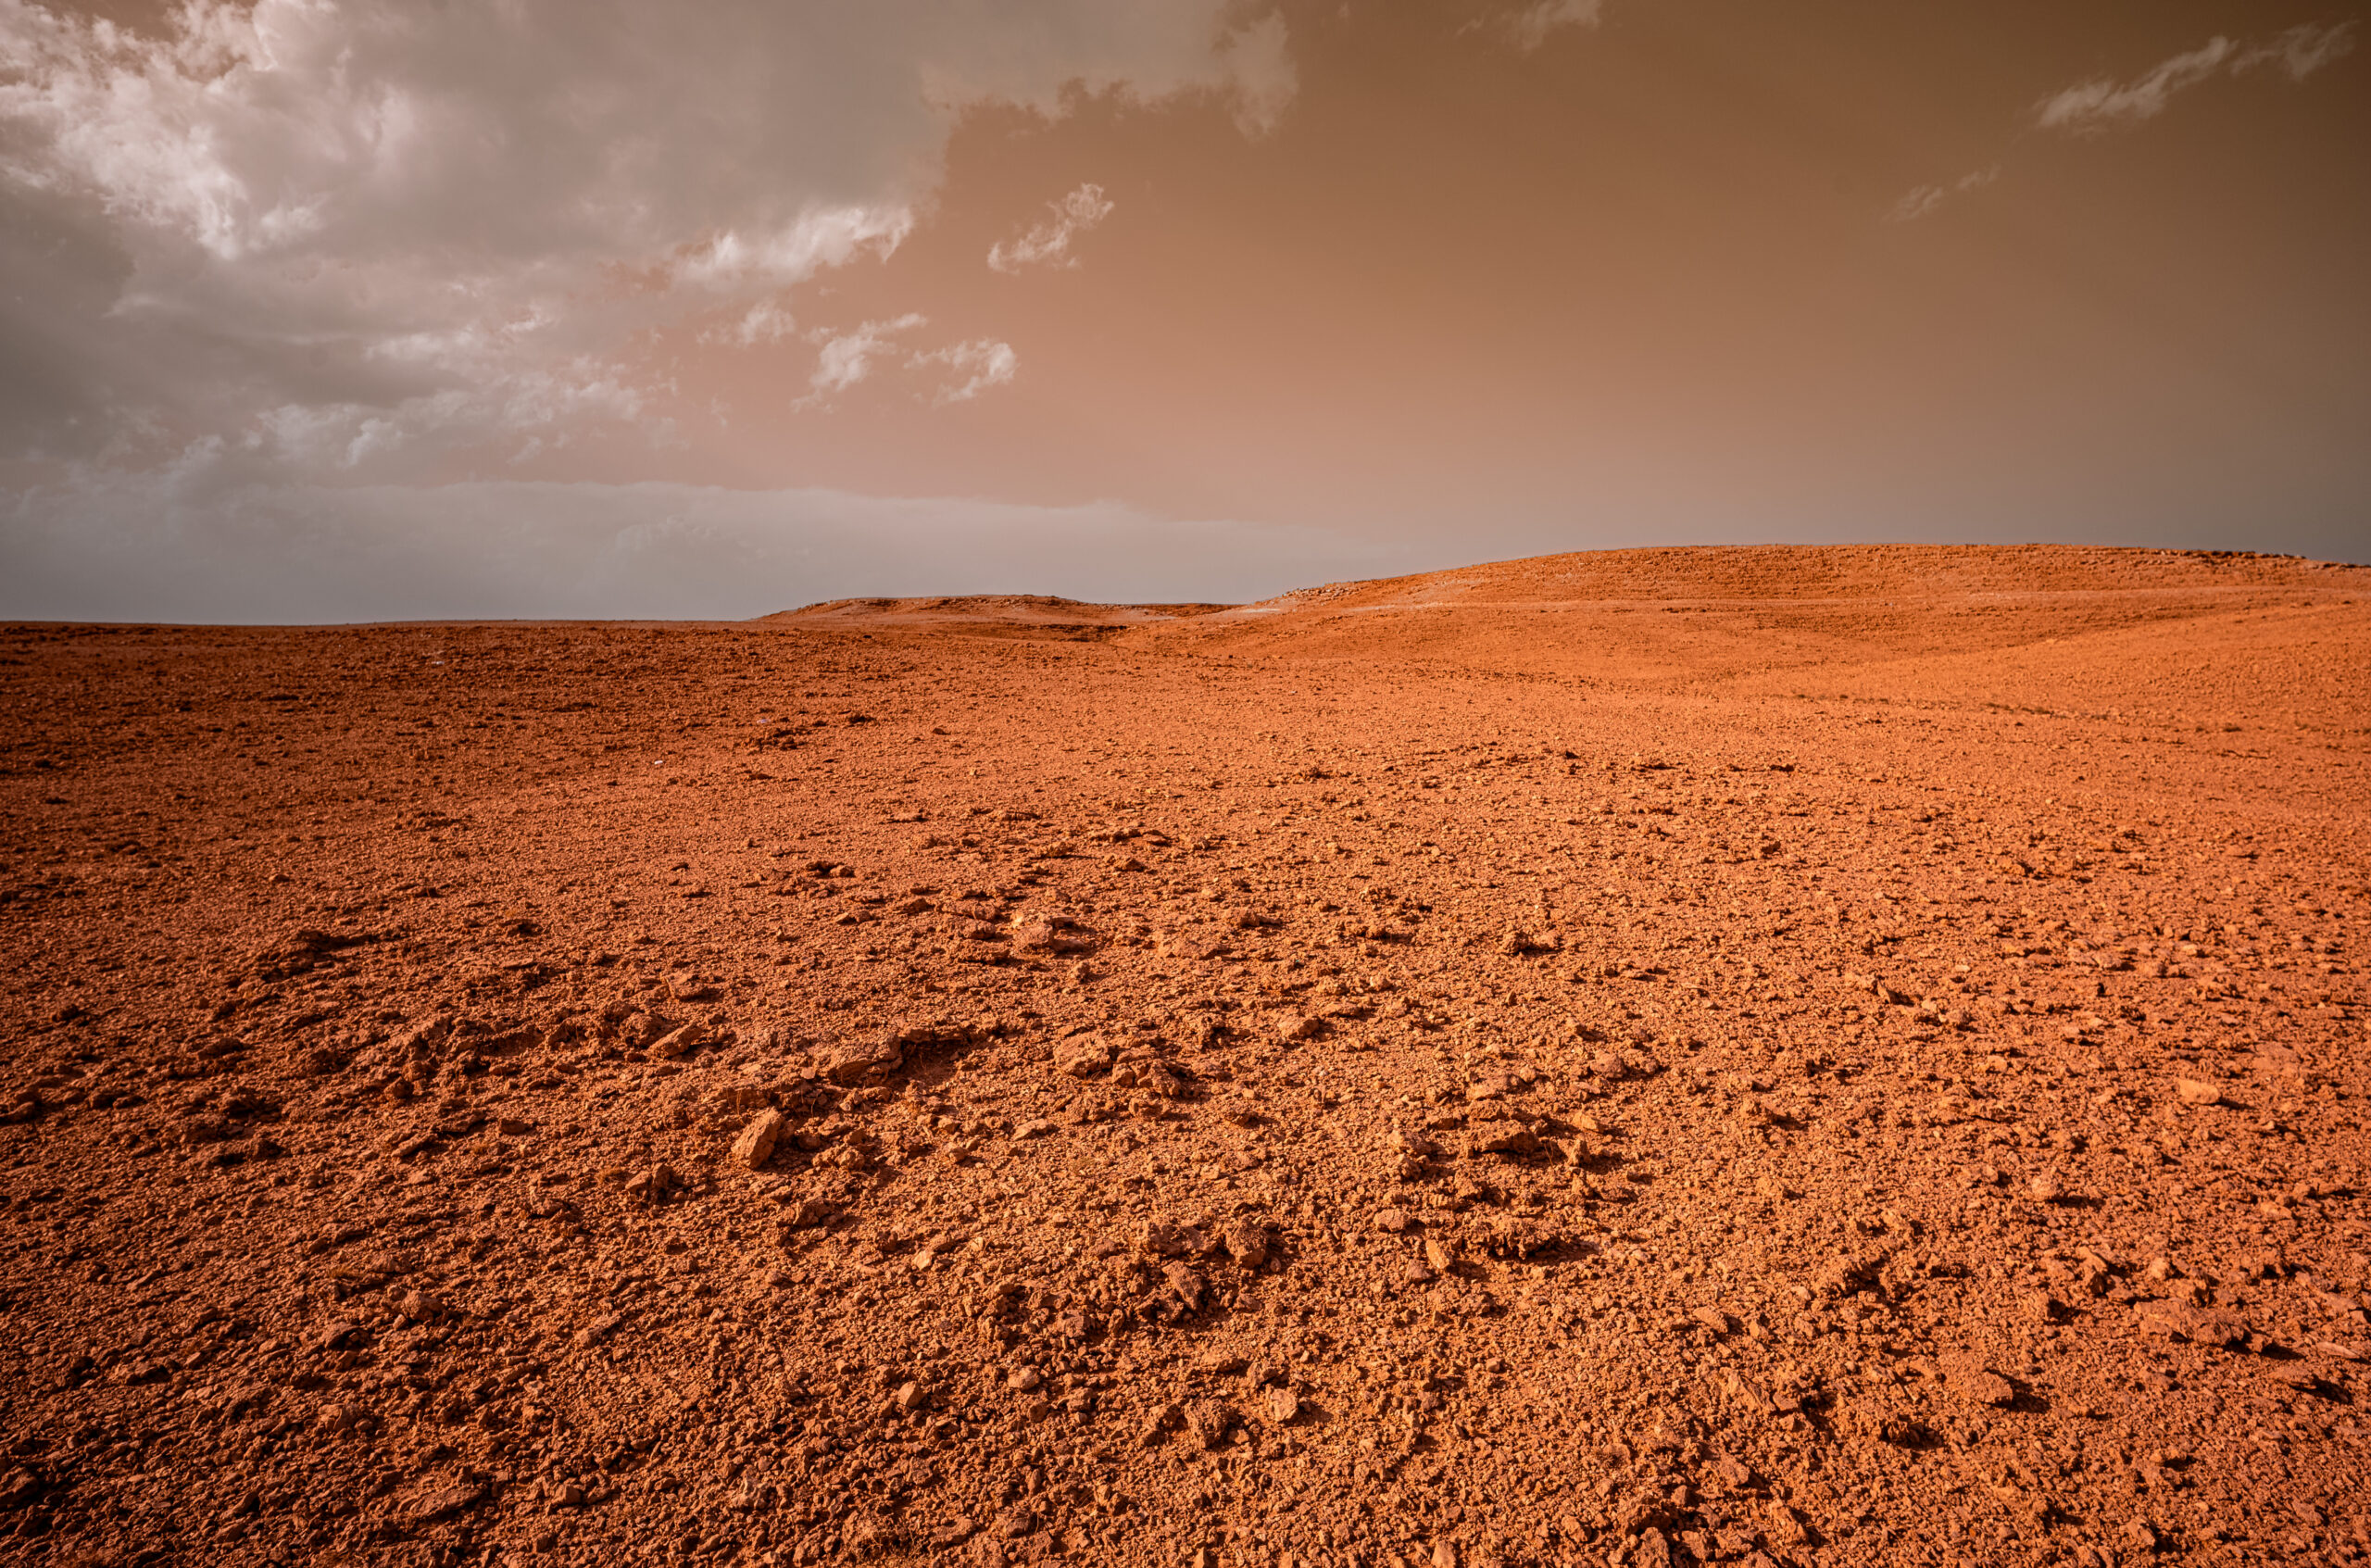 A Martian Landscape